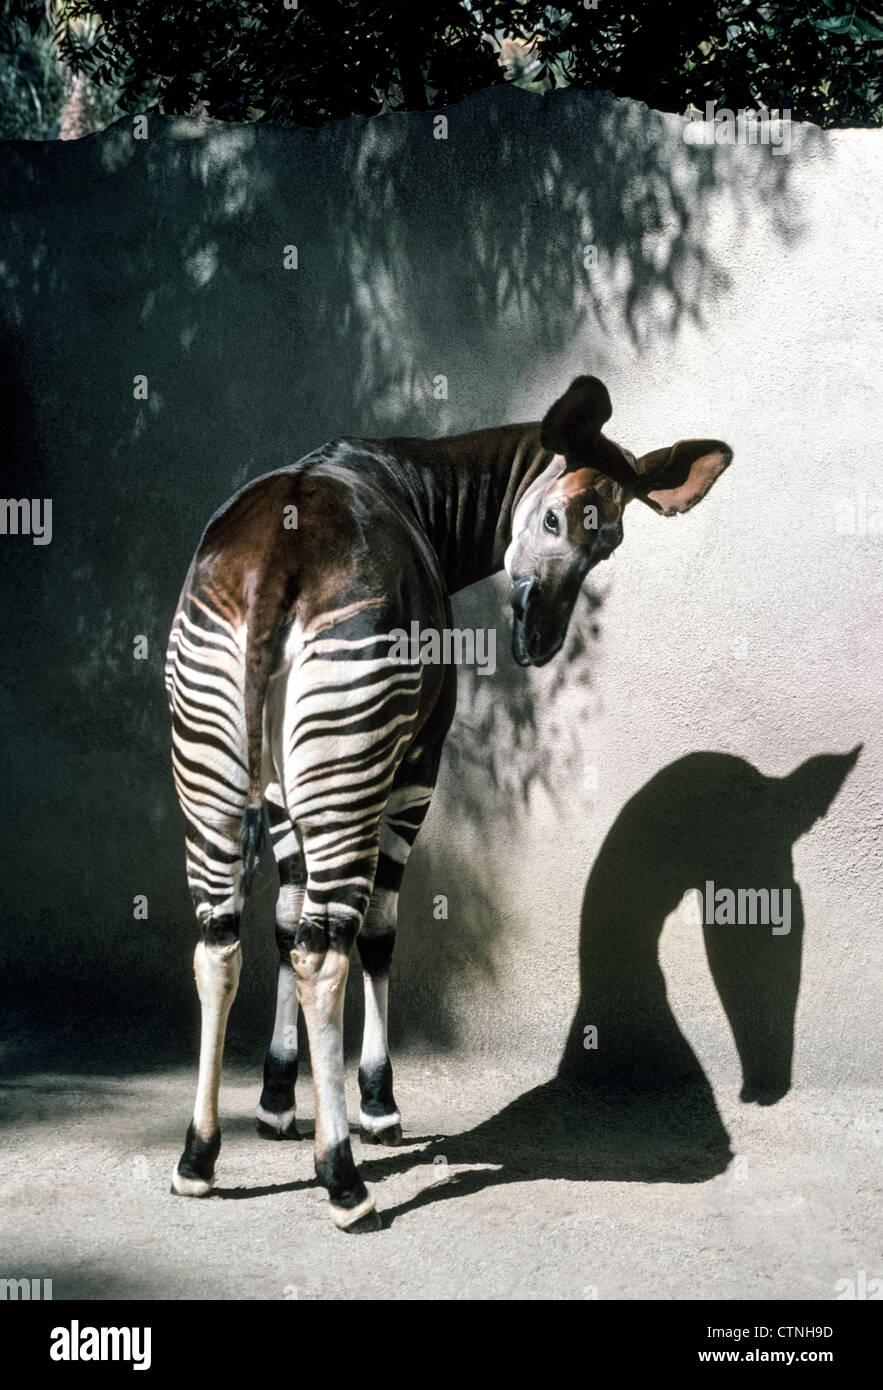 Diese vorsichtig Okapi aus Zentralafrika bezieht sich auf die Giraffe aber hat gestreift Hinterhand und Vorderbeine, die das Zebra ähneln. Stockfoto